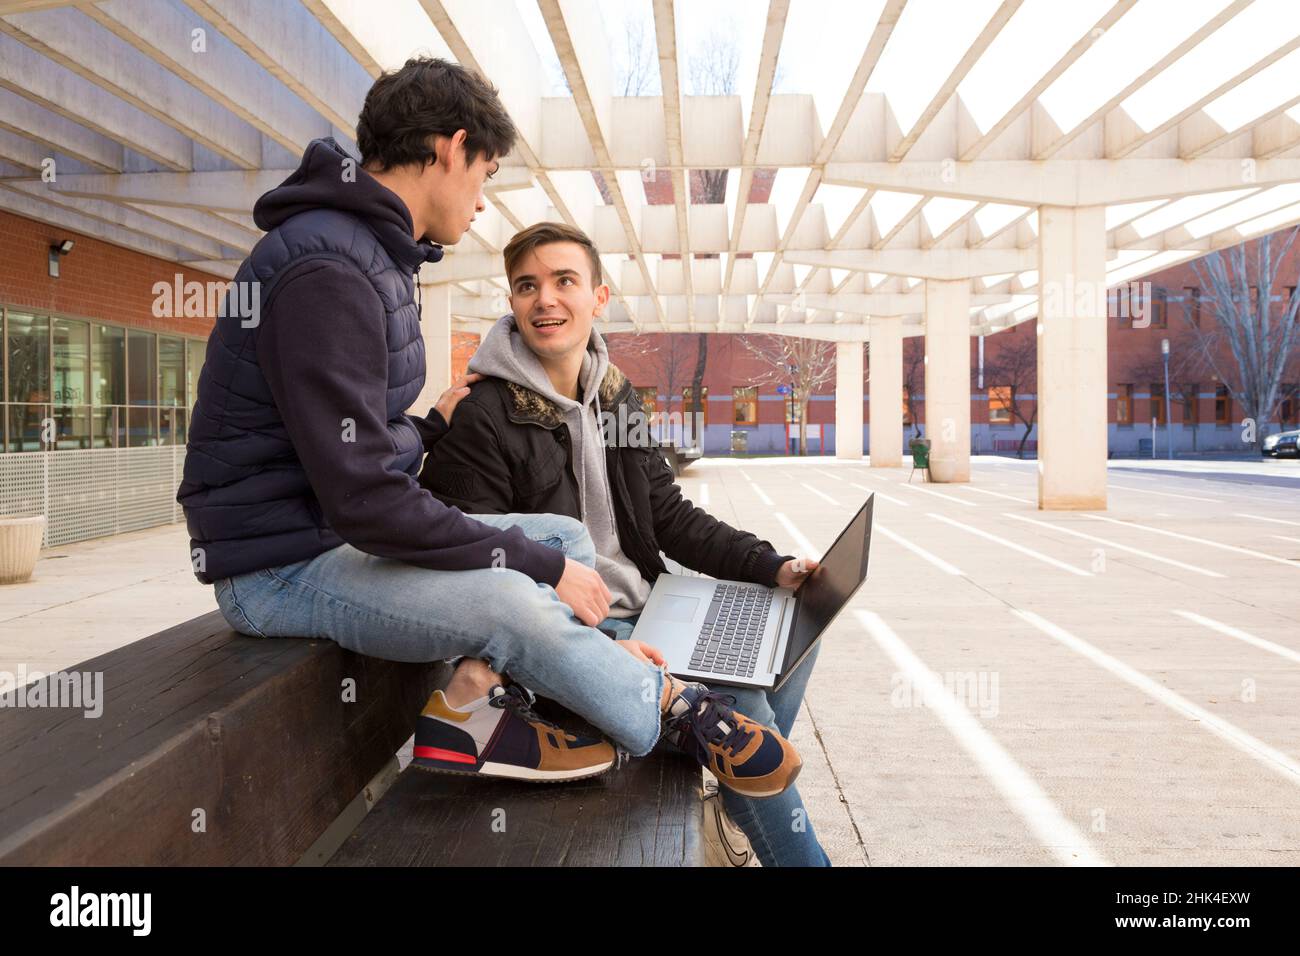 vue latérale deux amis étudiants assis sur un banc avec un ordinateur portable regardant l'un l'autre Banque D'Images